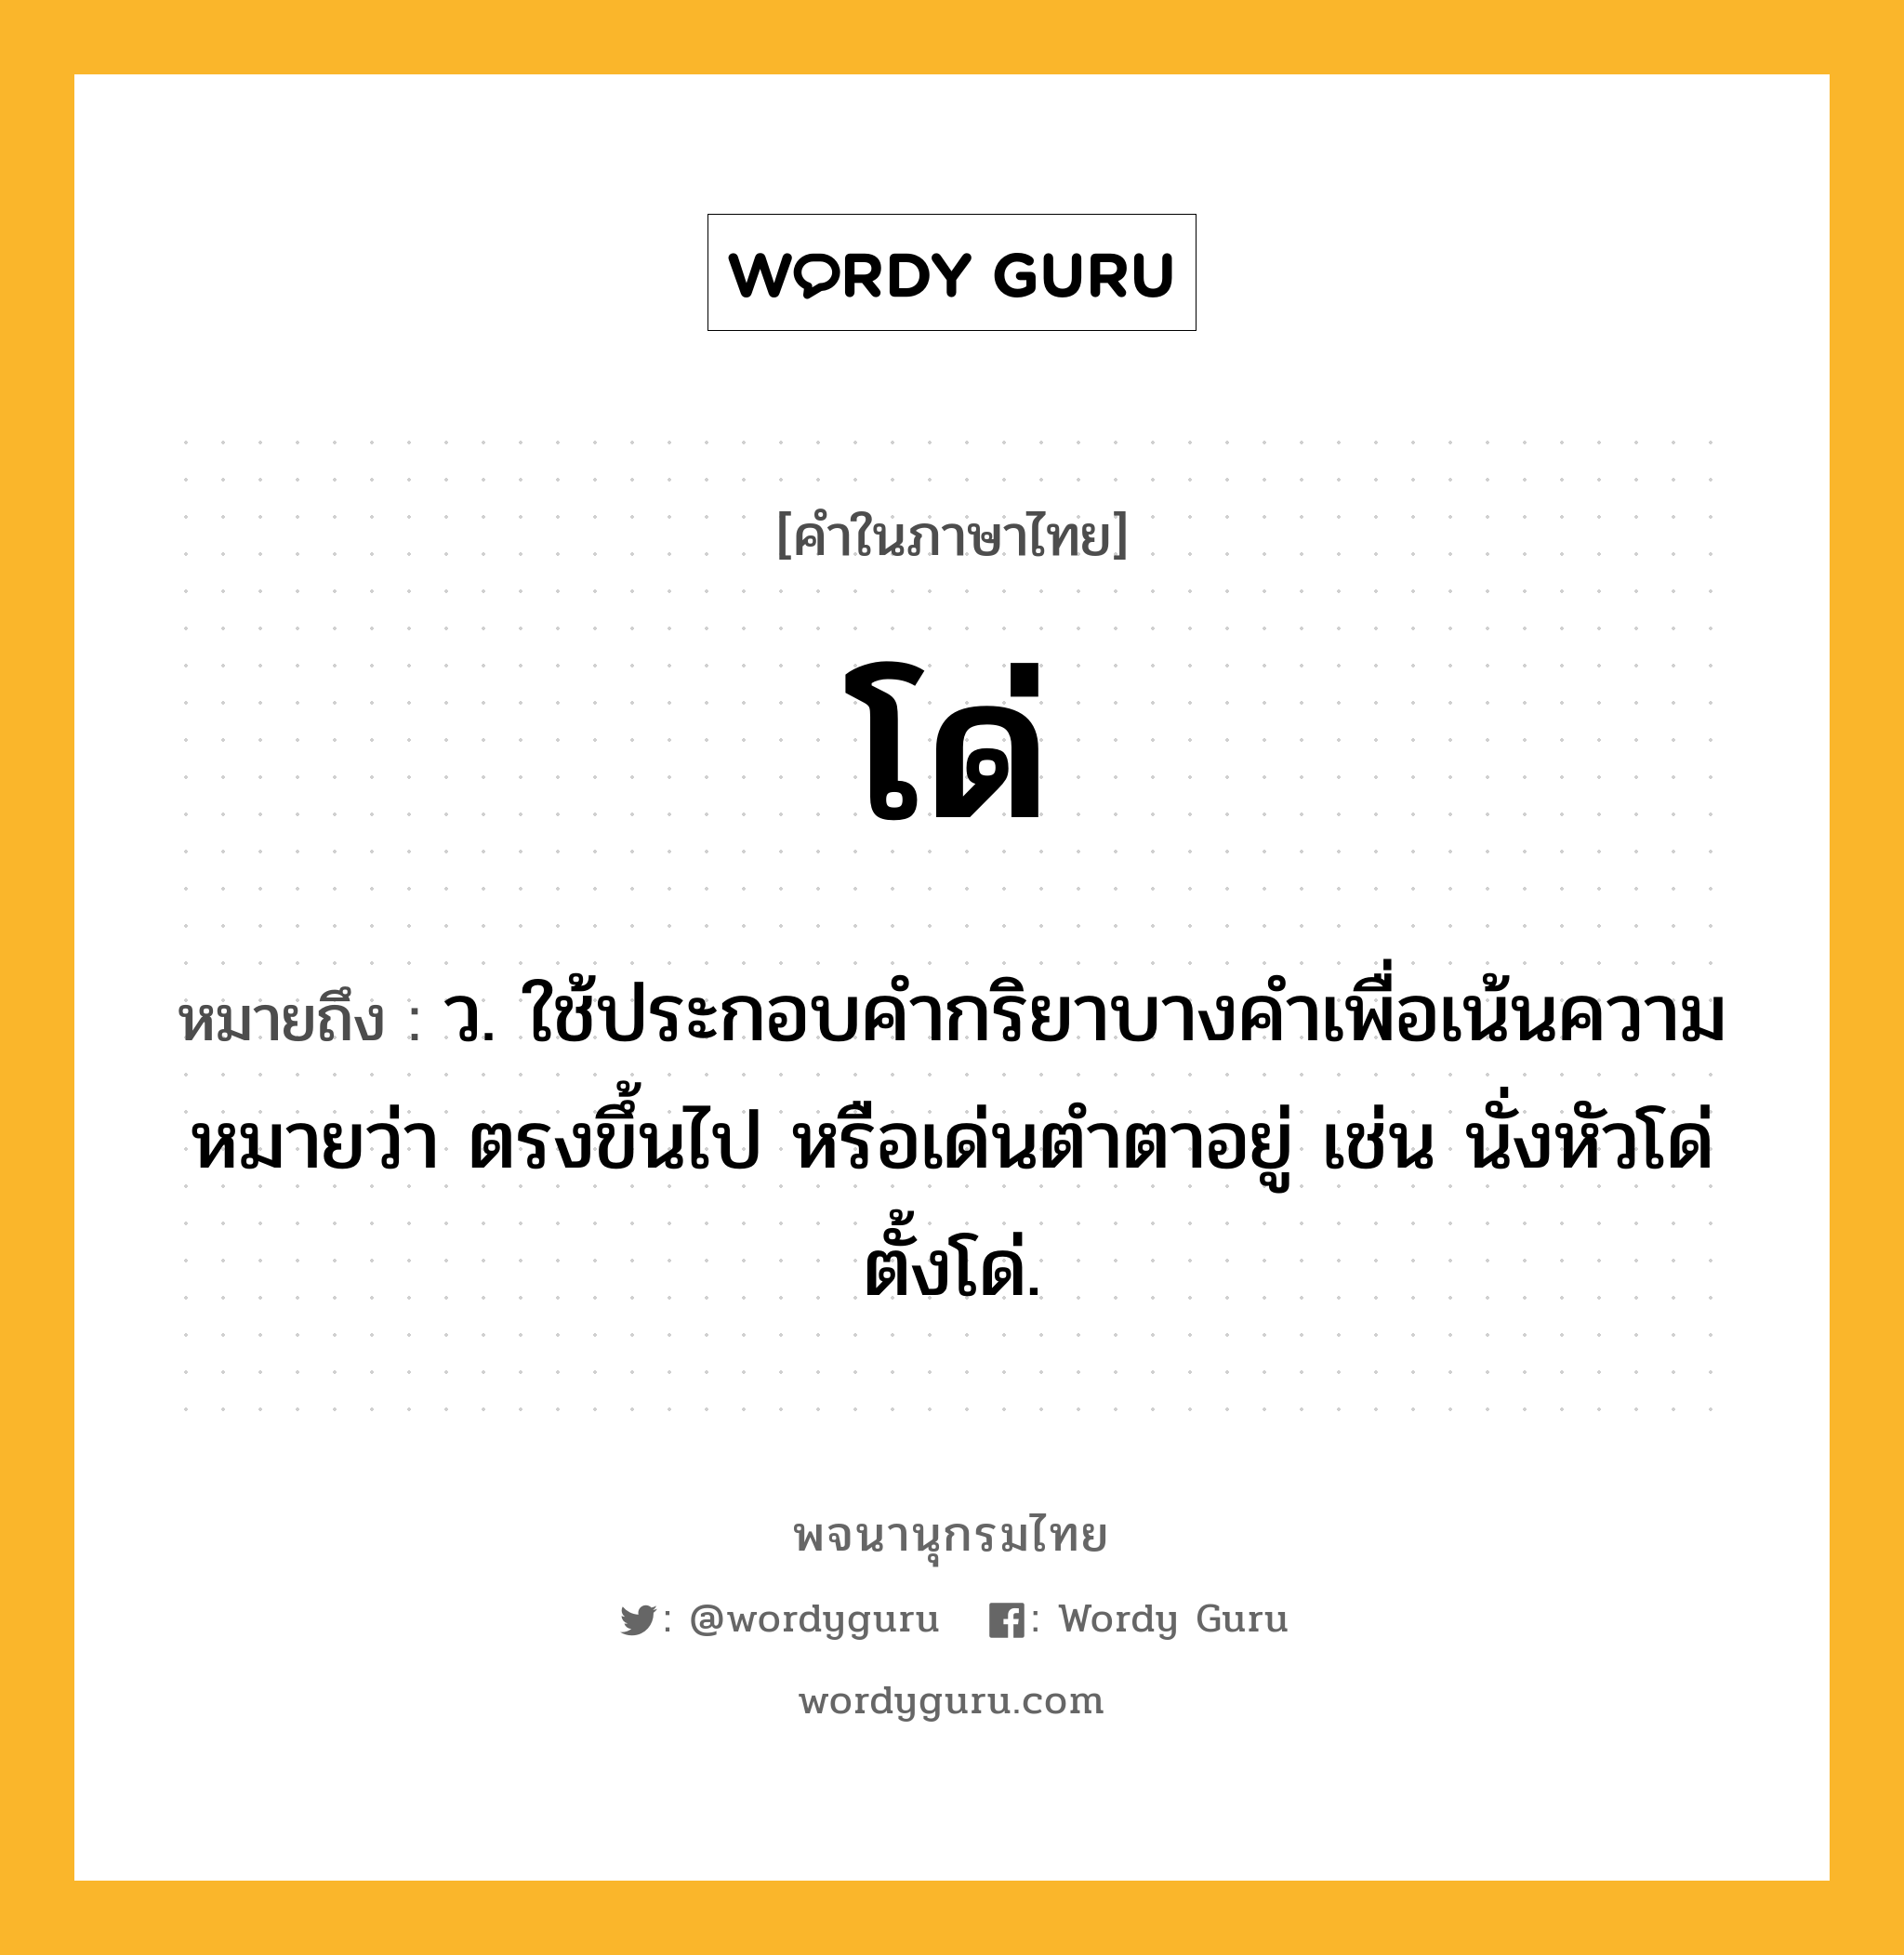 โด่ ความหมาย หมายถึงอะไร?, คำในภาษาไทย โด่ หมายถึง ว. ใช้ประกอบคํากริยาบางคําเพื่อเน้นความหมายว่า ตรงขึ้นไป หรือเด่นตําตาอยู่ เช่น นั่งหัวโด่ ตั้งโด่.